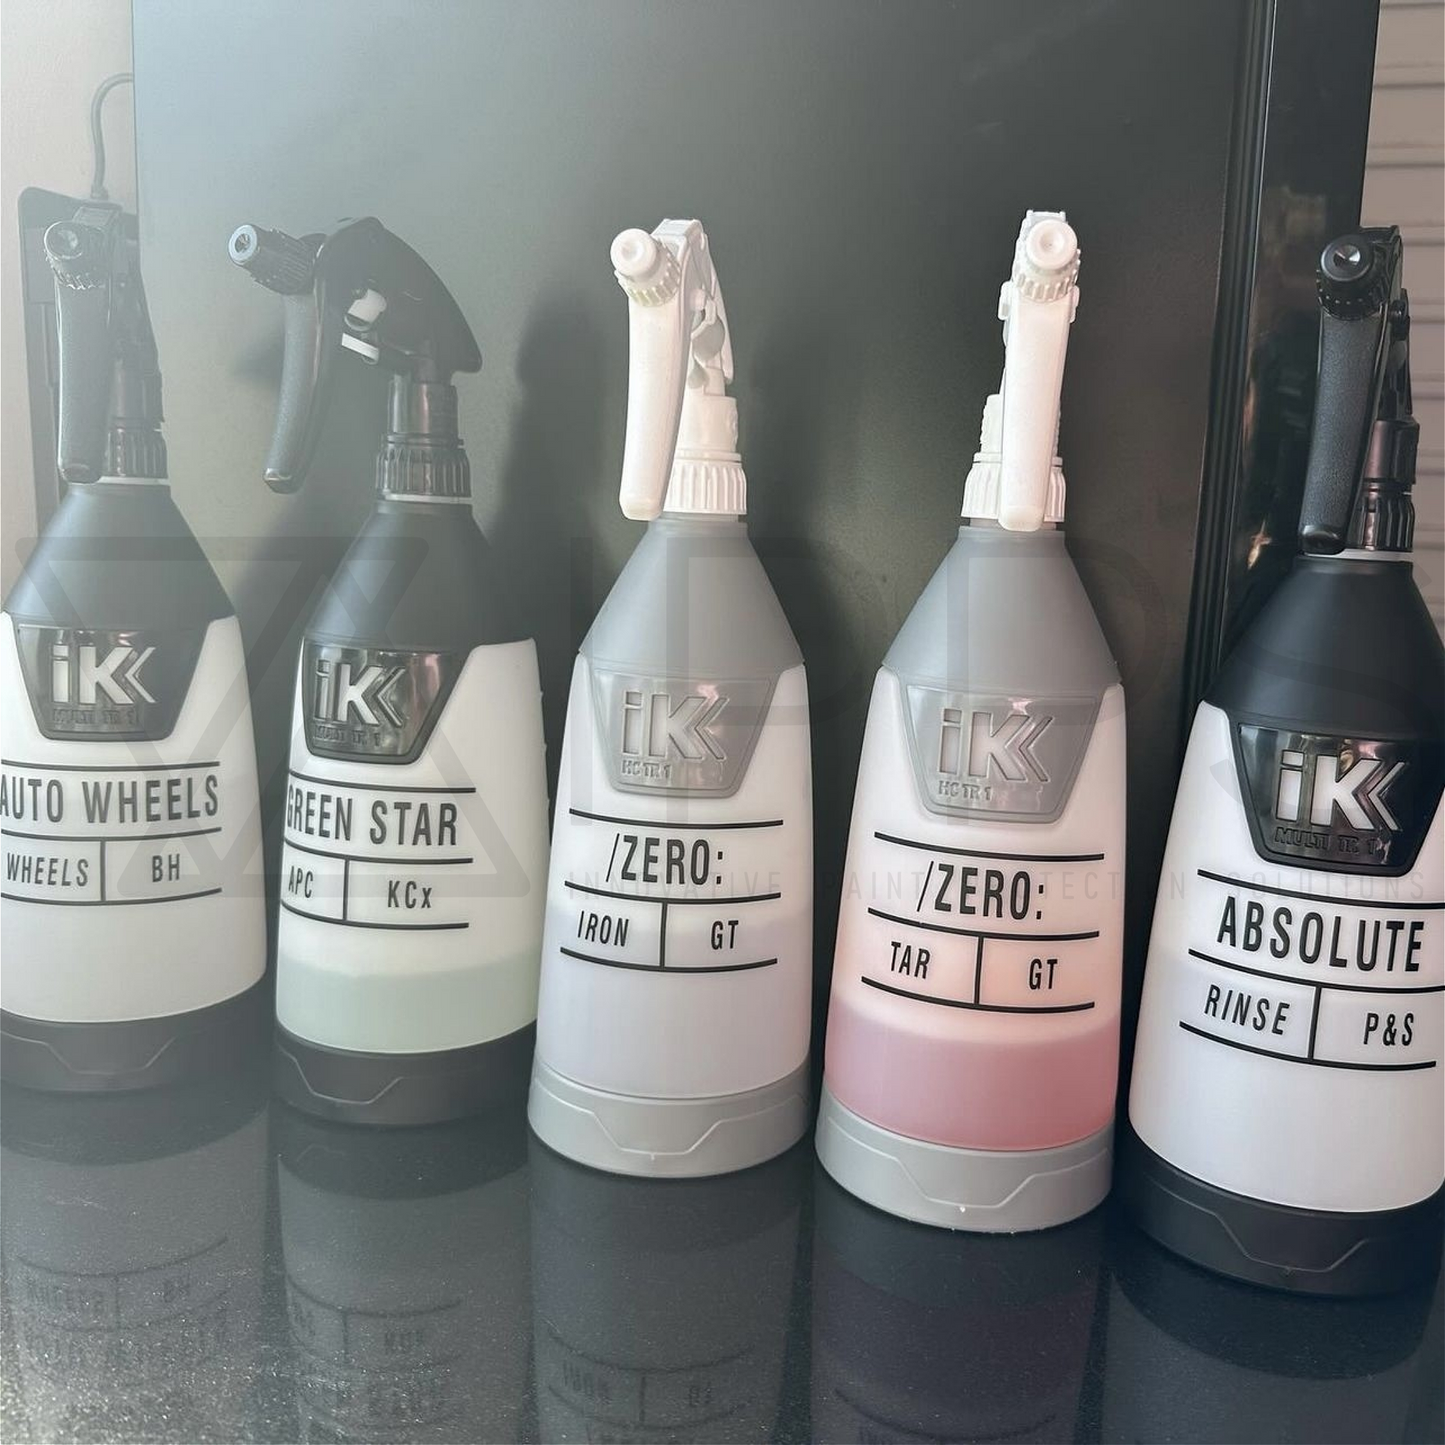 IK Sprayer Bottle Back Identification Label Stickers